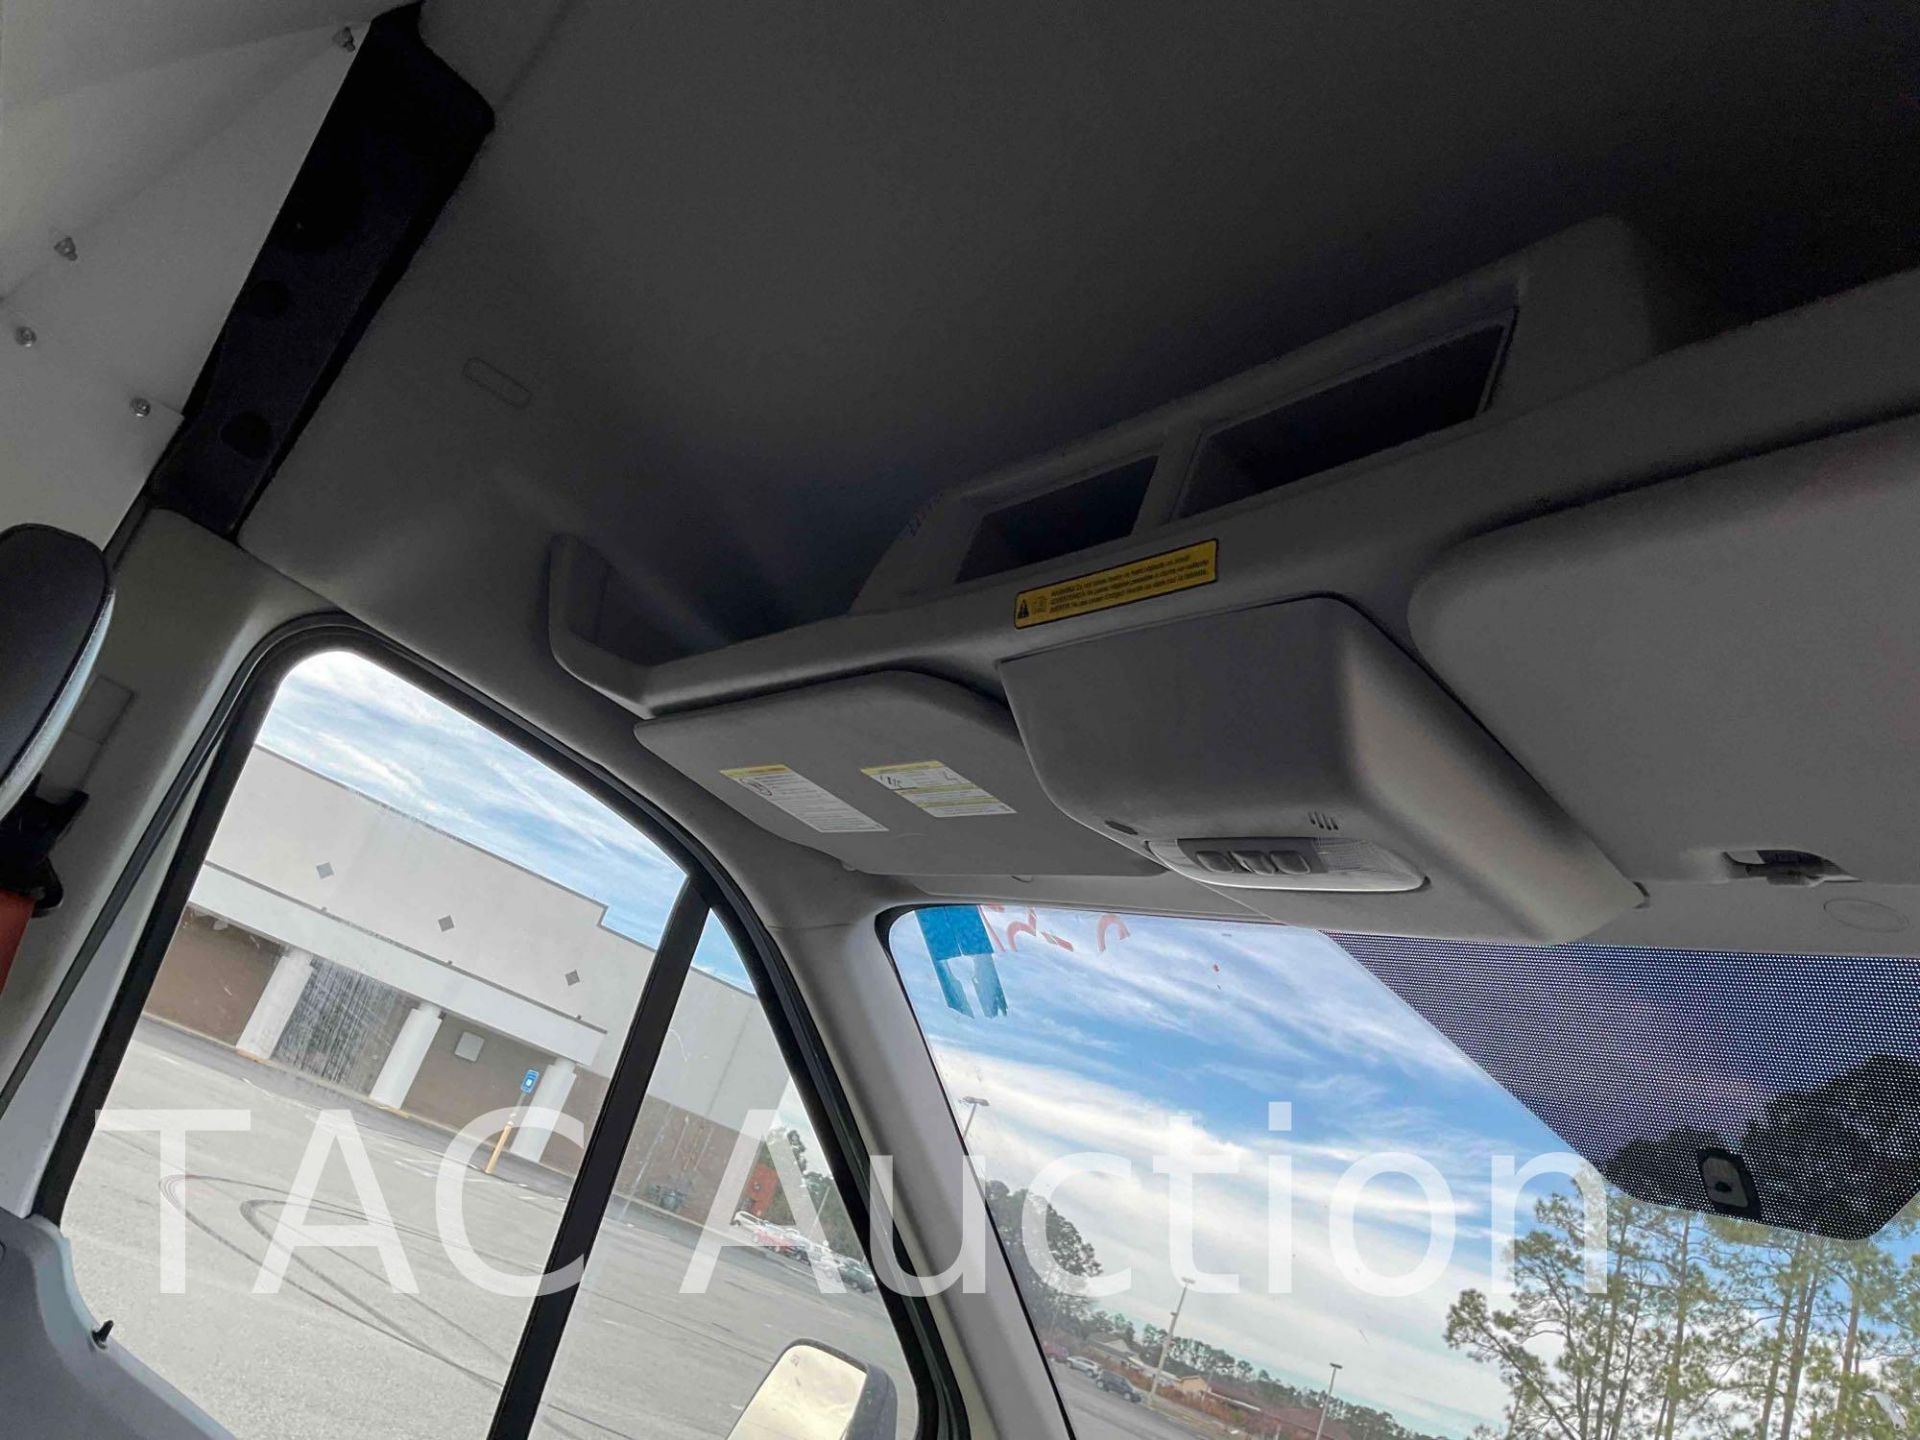 2019 Ford Transit 150 Cargo Van - Image 20 of 50